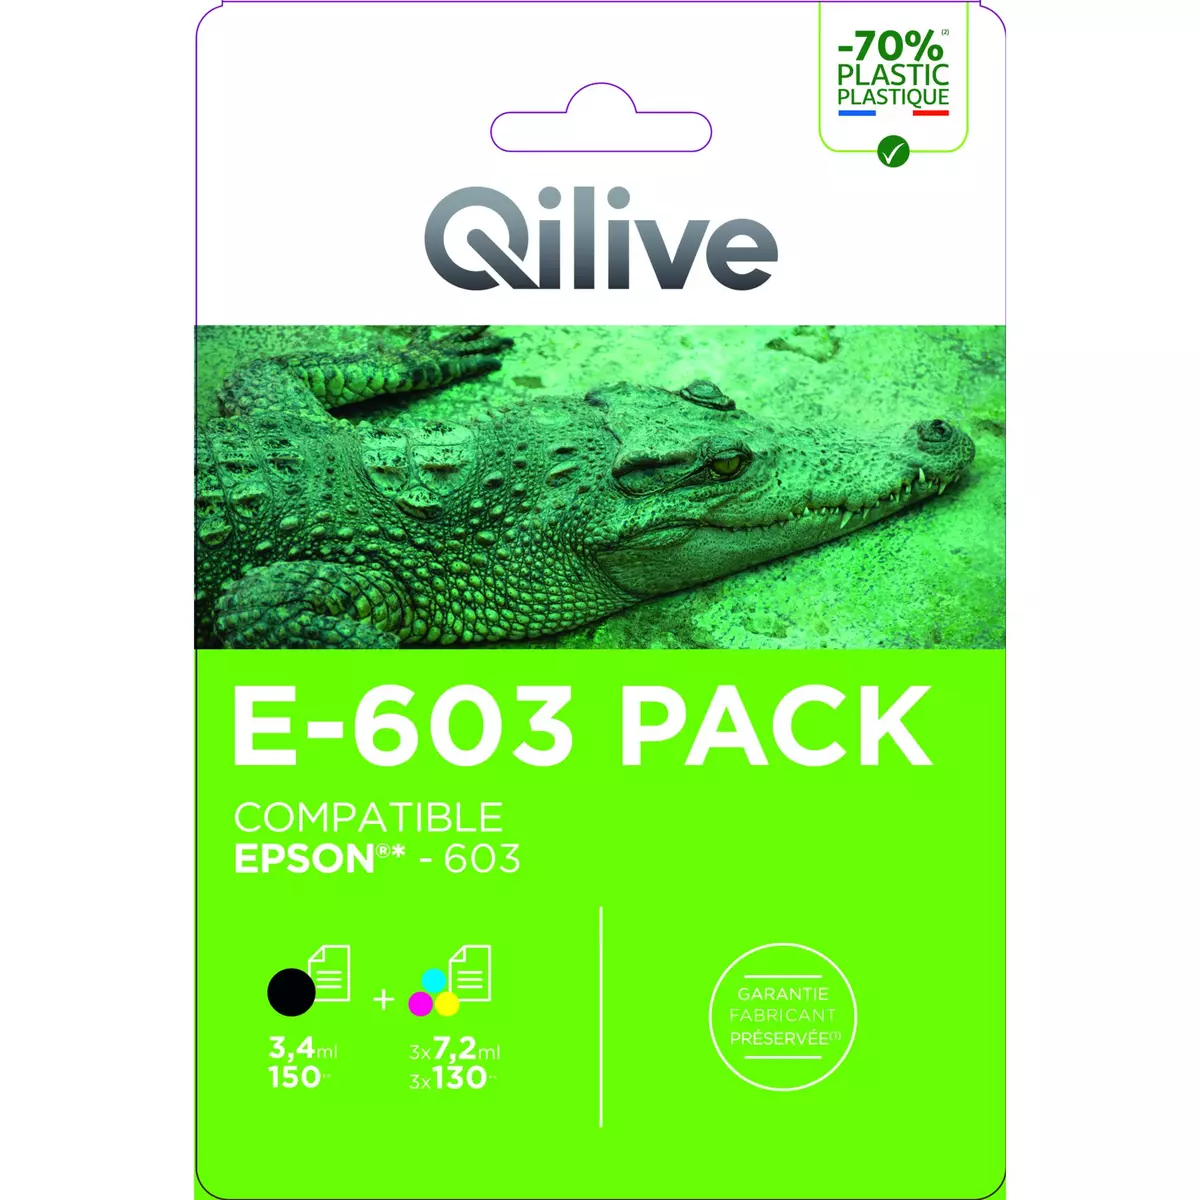 QILIVE Cartouche imprimante E-603 Pack pas cher 